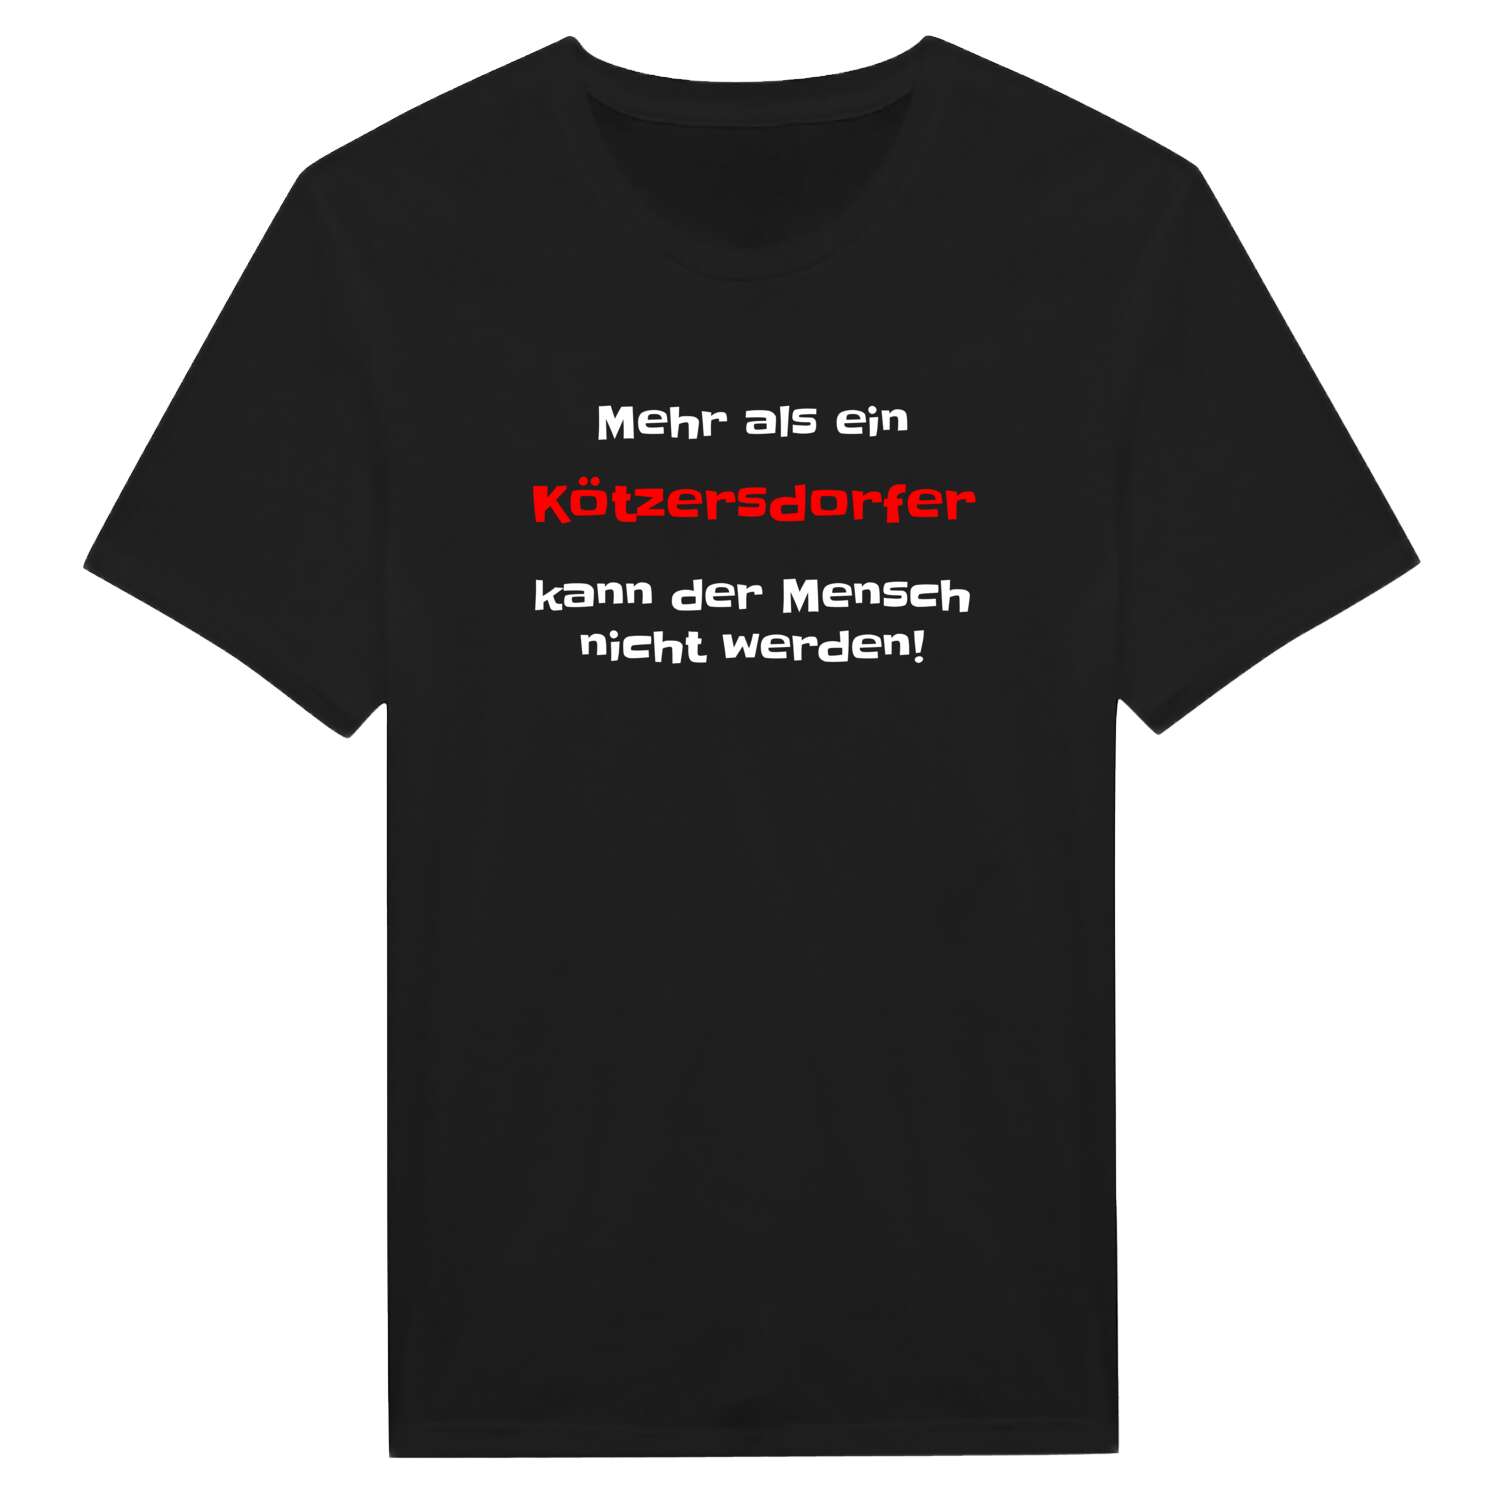 Kötzersdorf T-Shirt »Mehr als ein«